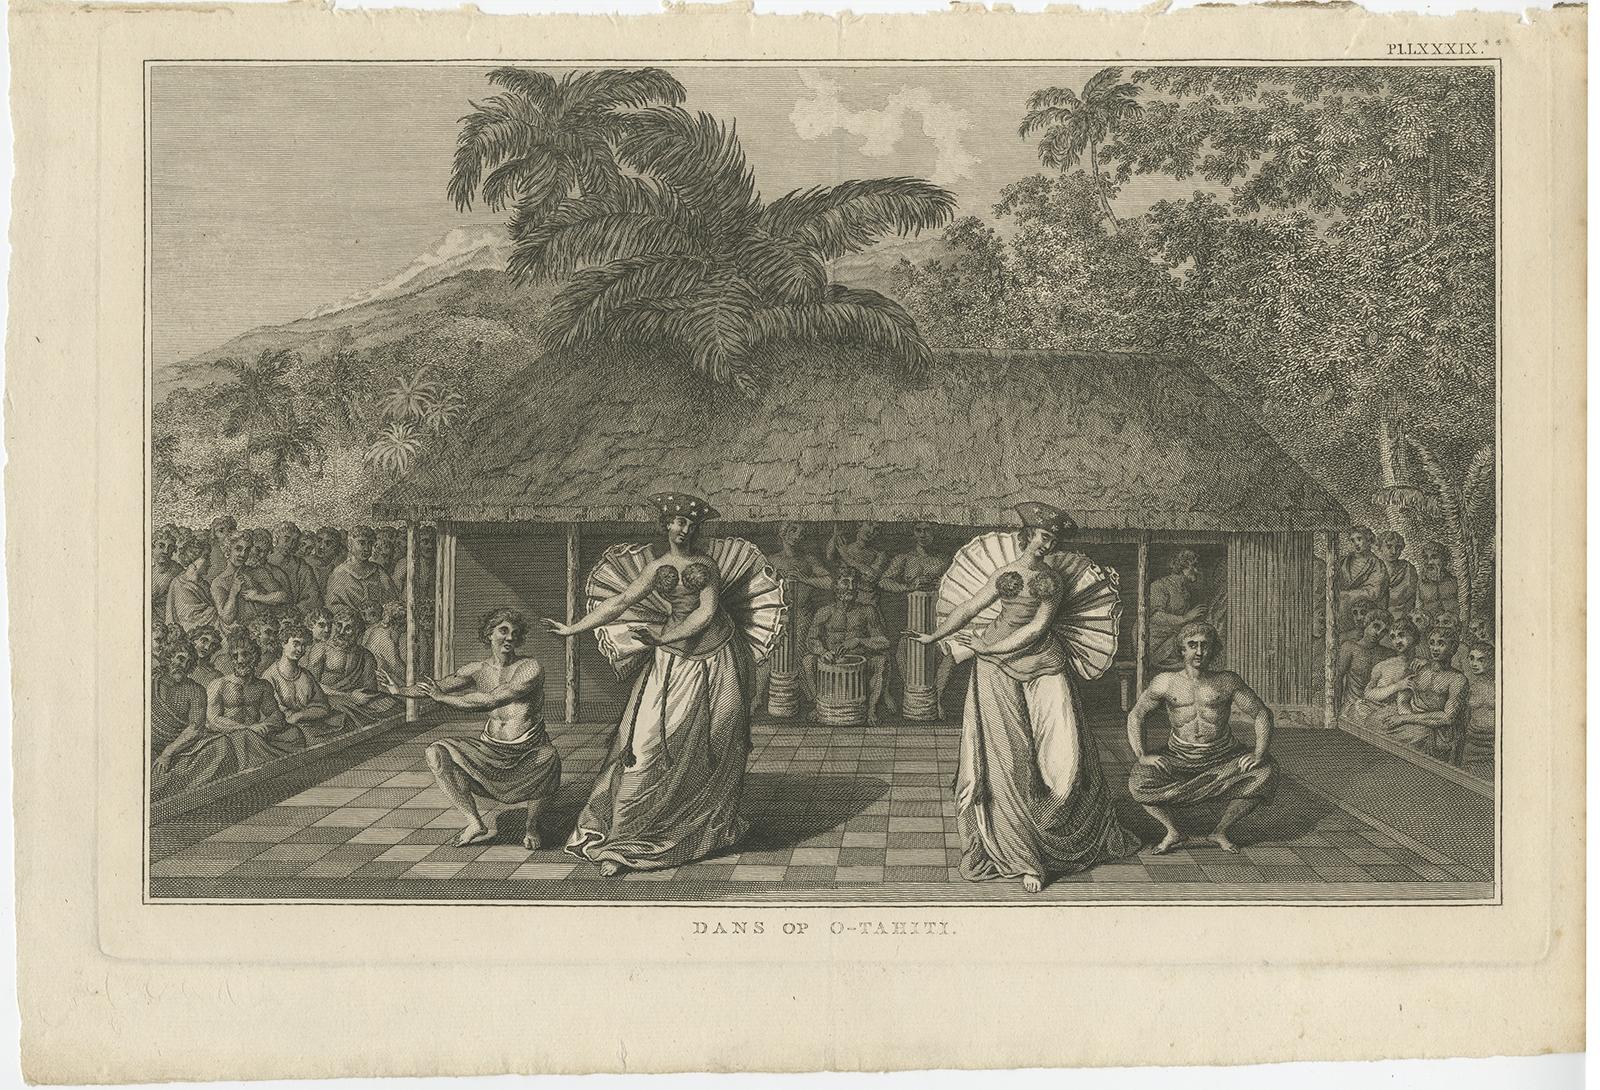 Antiker Druck mit dem Titel 'Dans van O-Tahiti'. 

Antiker Druck, der tanzende Eingeborene von Tahiti zeigt. Stammt aus 